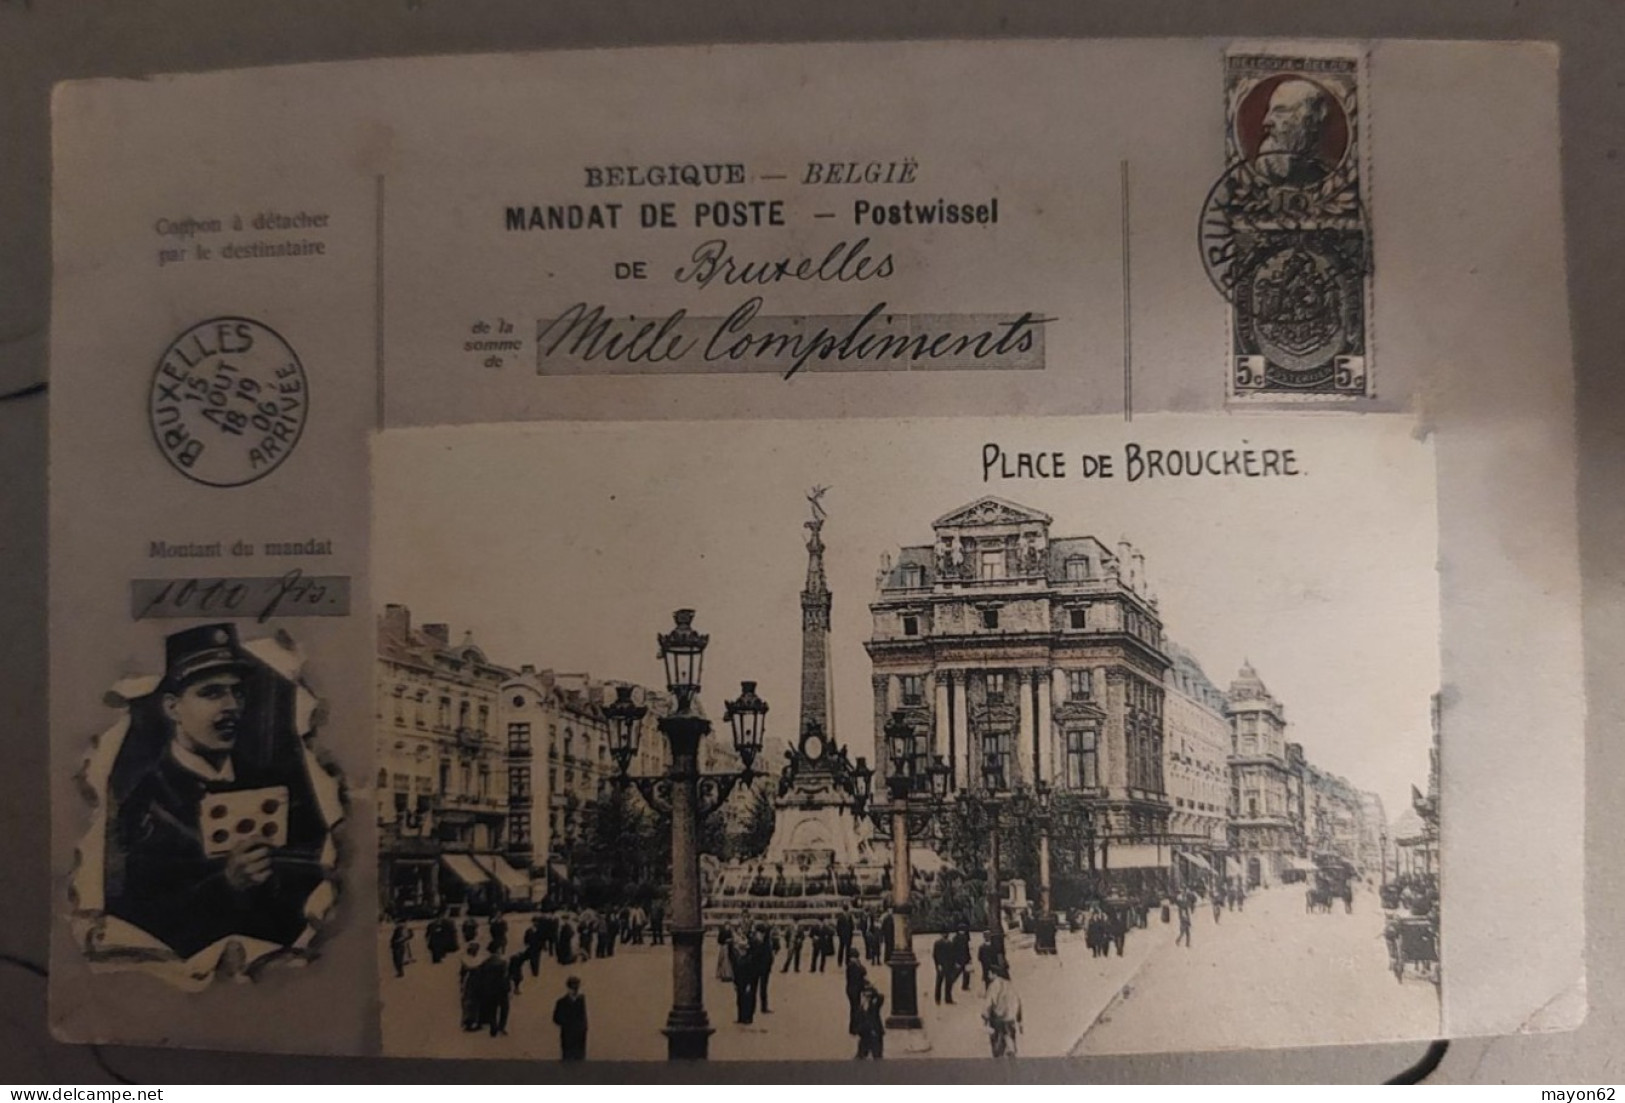 BRUXELLES - CPA MANDAT POSTE DE BRUXELLES 1906 - PLACE DE BROUCKERE - BELLE CPA - Places, Squares